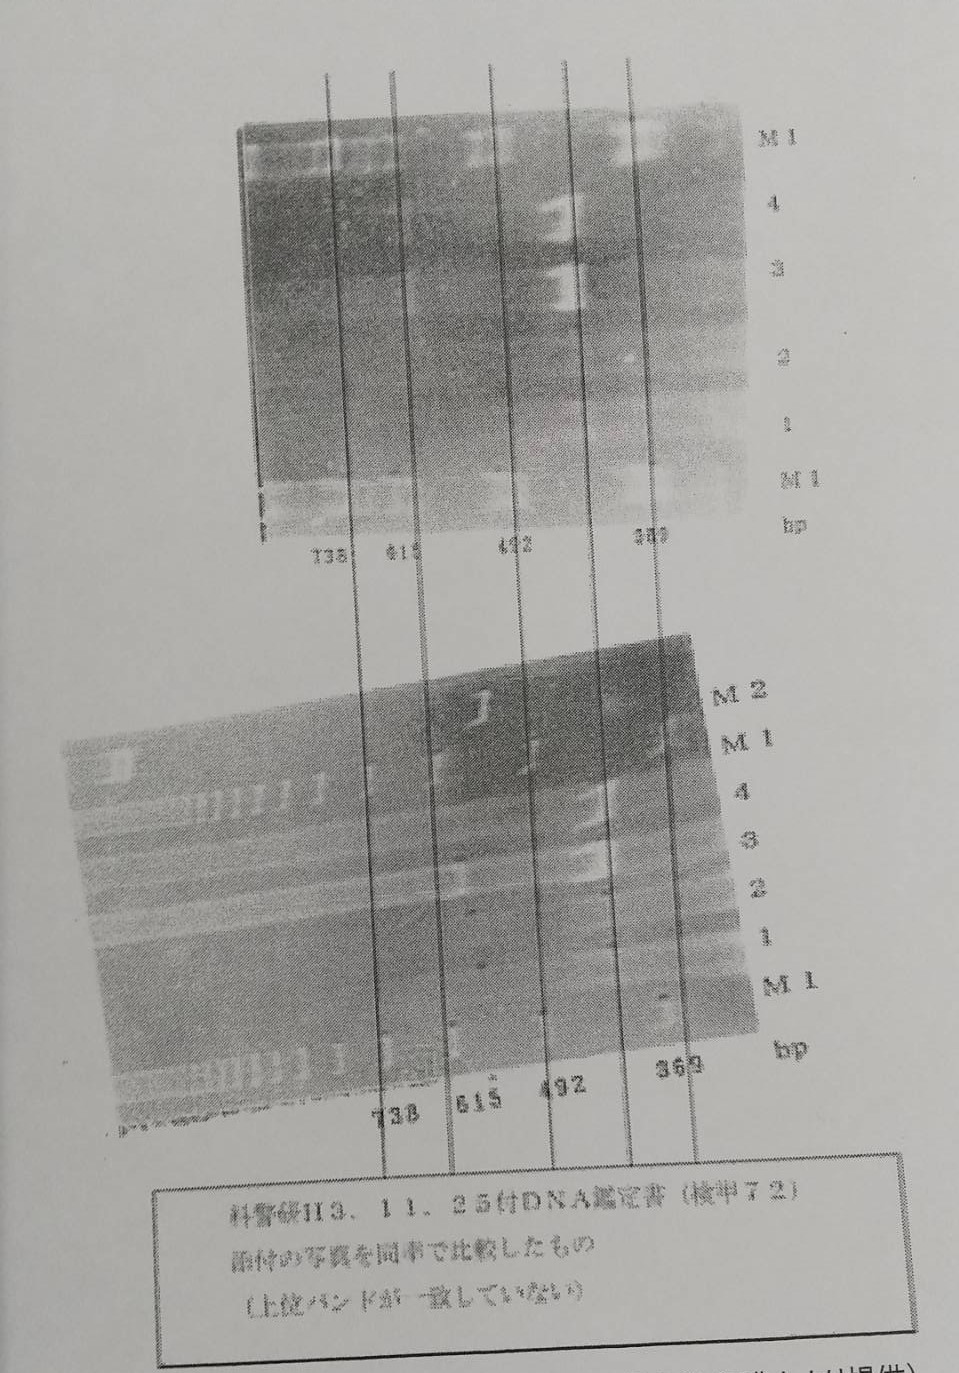 科警研が一審裁判に提出したDNA型鑑定の写真。かなりずれているのが分かる。筑波大の本田克也元教授箱の写真を見て歪みがひどく、鑑定に失敗していることが分かる写真だ。これが裁判に提出されている事を見ると、これが最高の写真で、鑑定自体失敗していたことが分かると指摘した。